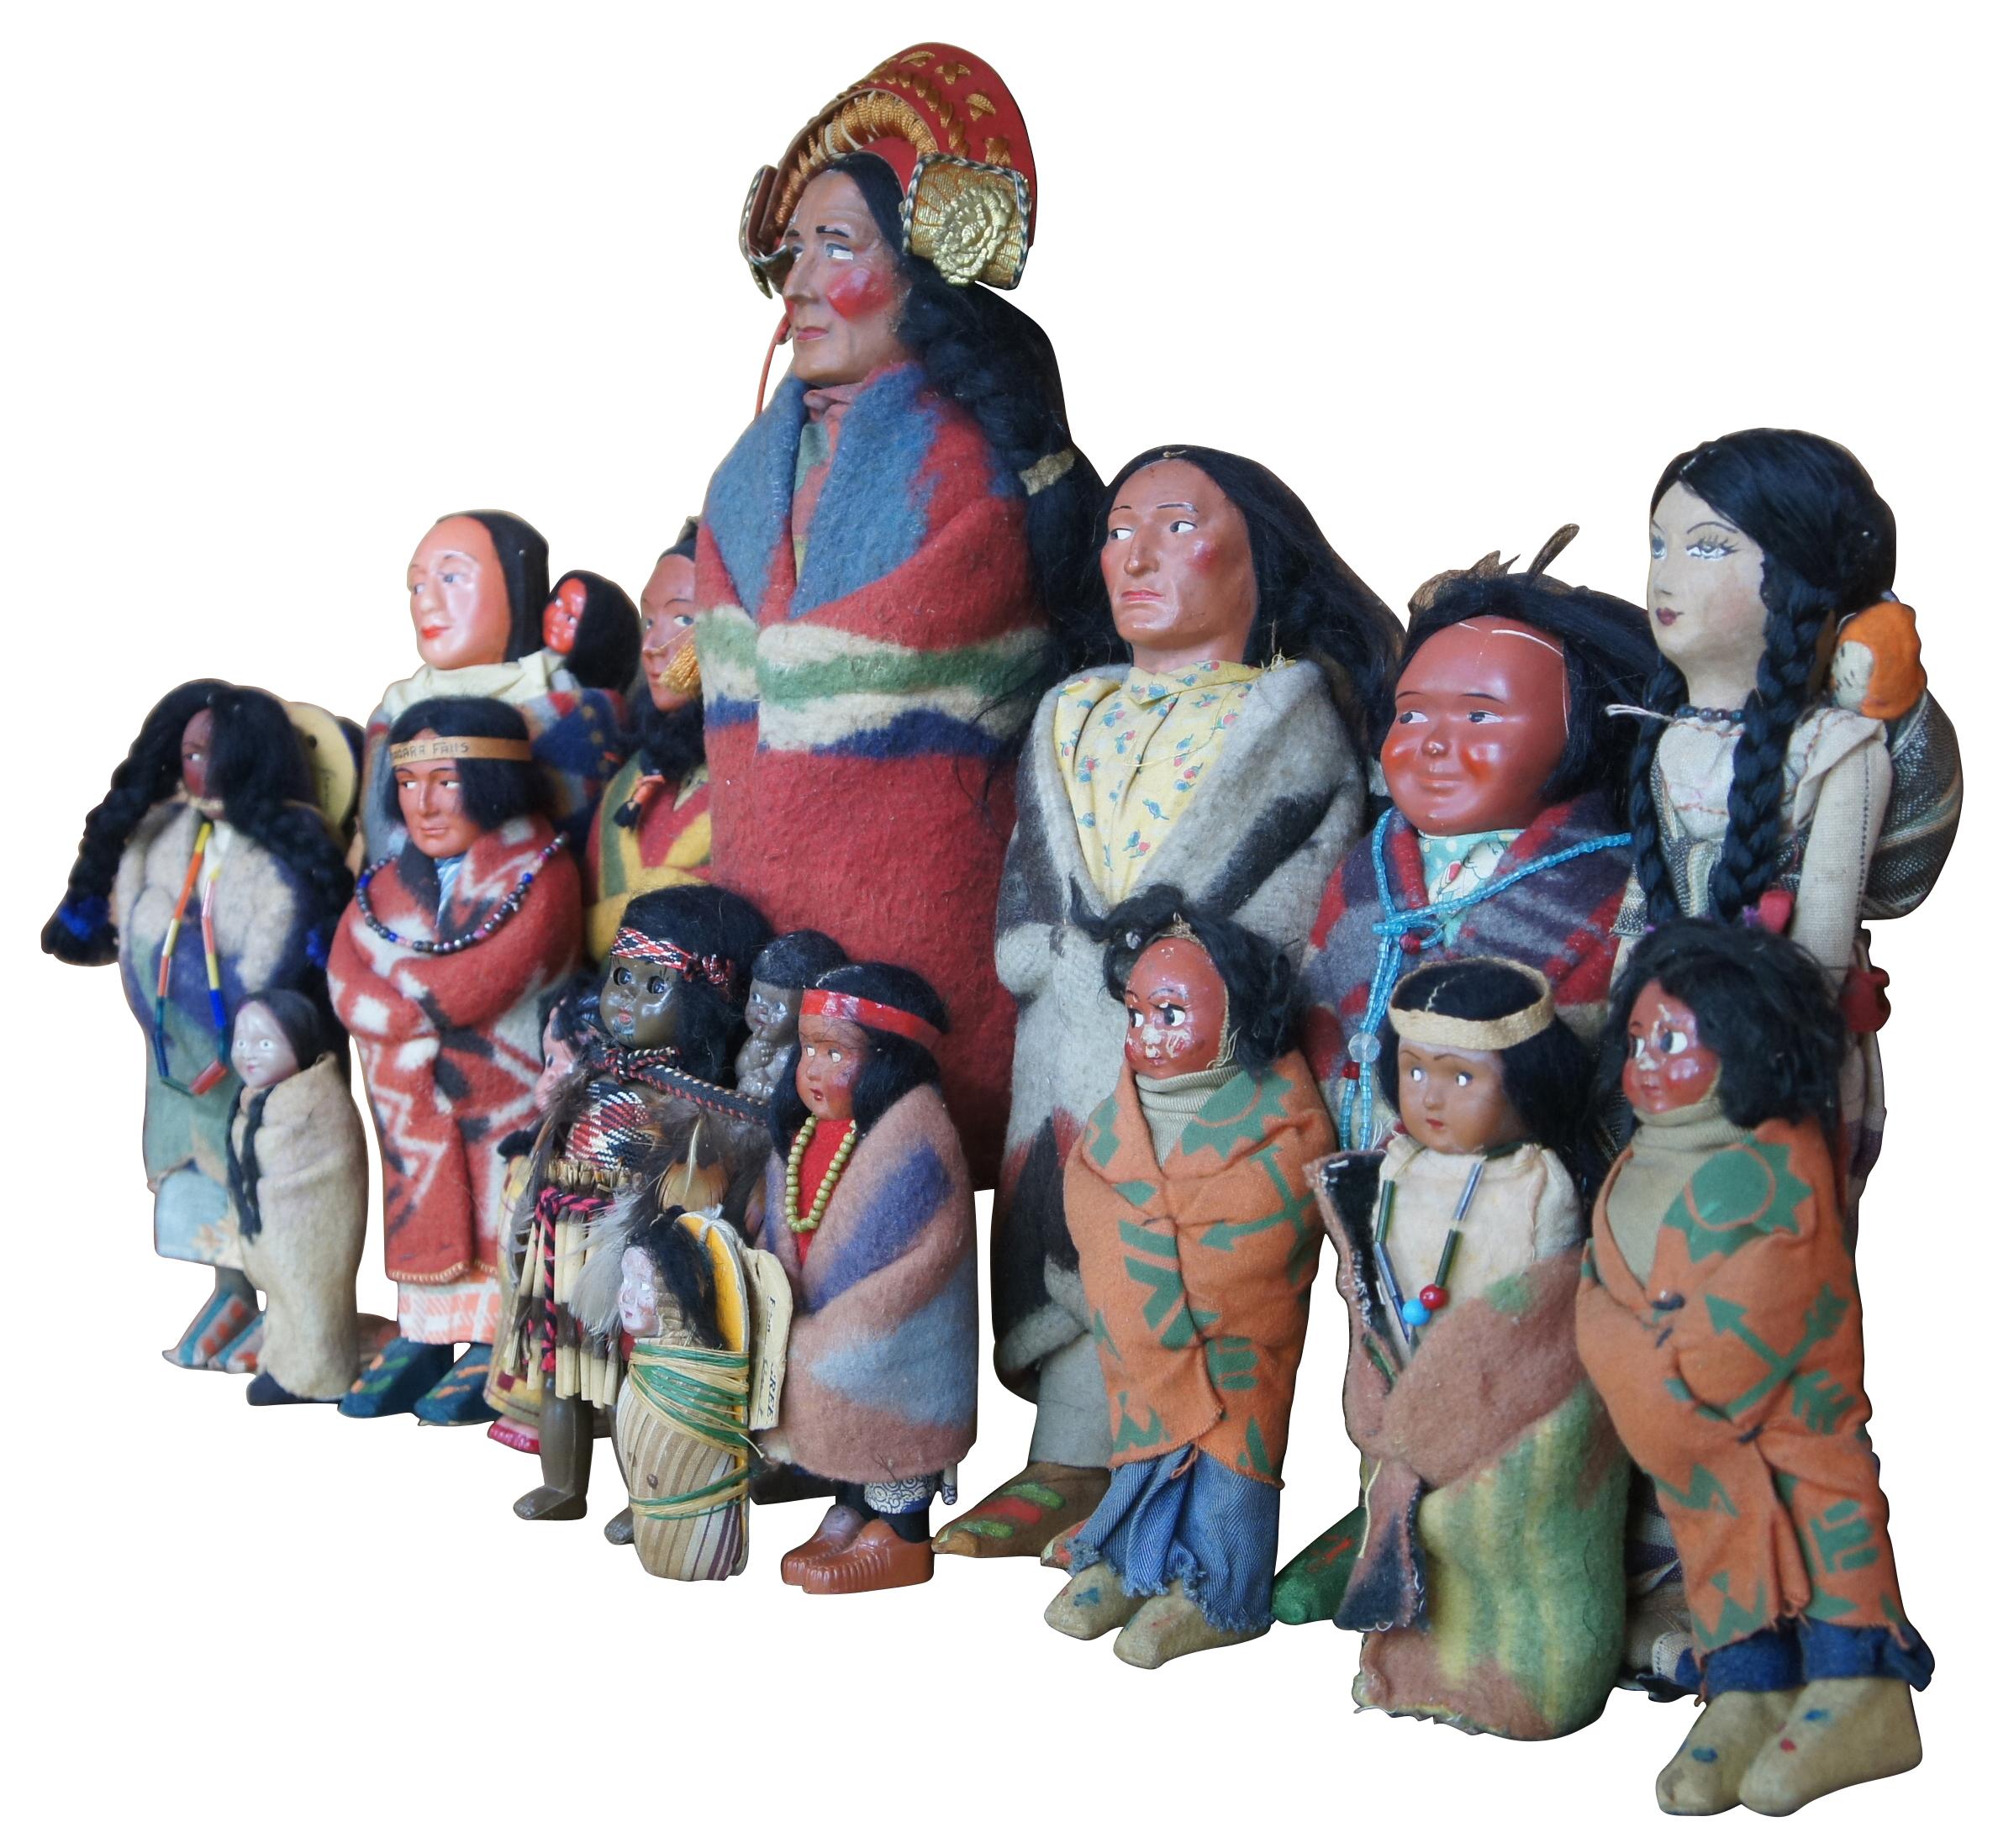 Lot de 16 poupées Skookum amérindiennes anciennes représentant des hommes, des femmes, des enfants et des bébés portant des vêtements traditionnels en laine avec des accents perlés, des coiffes et des couvertures en tapisserie.

le plus grand : 5